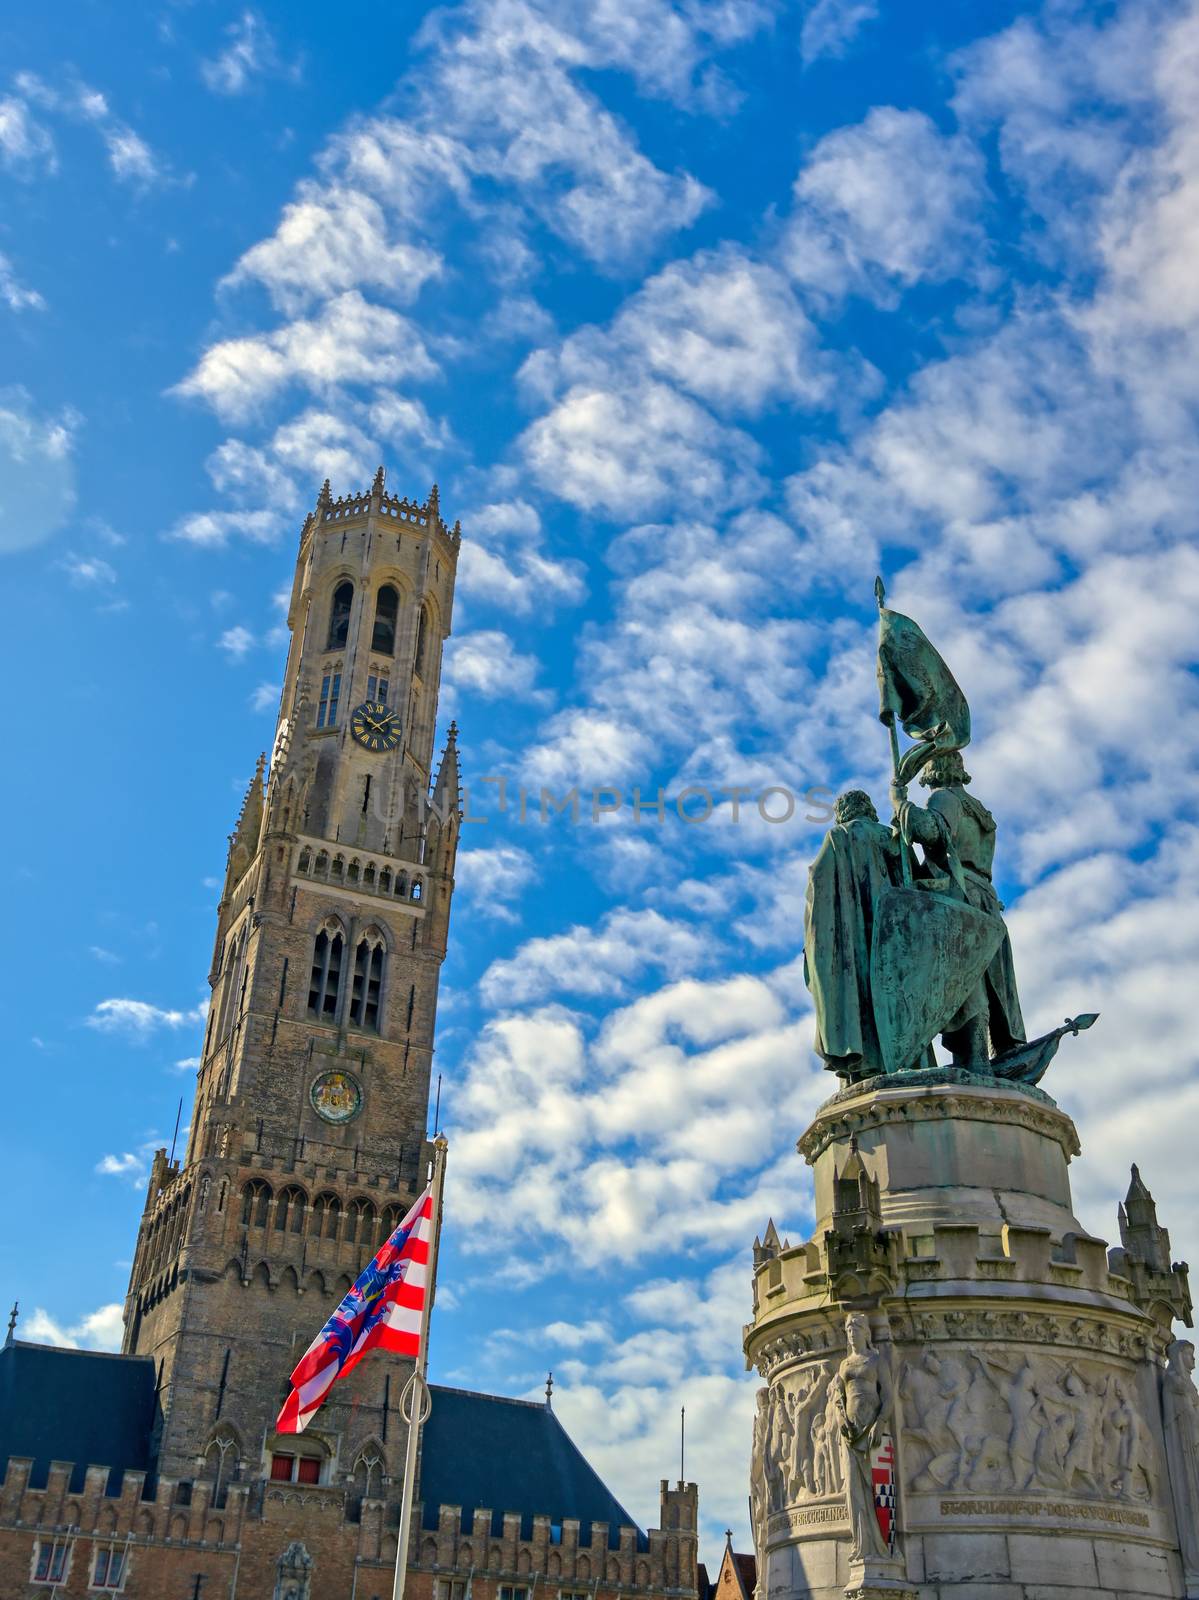 Bruges, Belgium Market Square statue by jbyard22